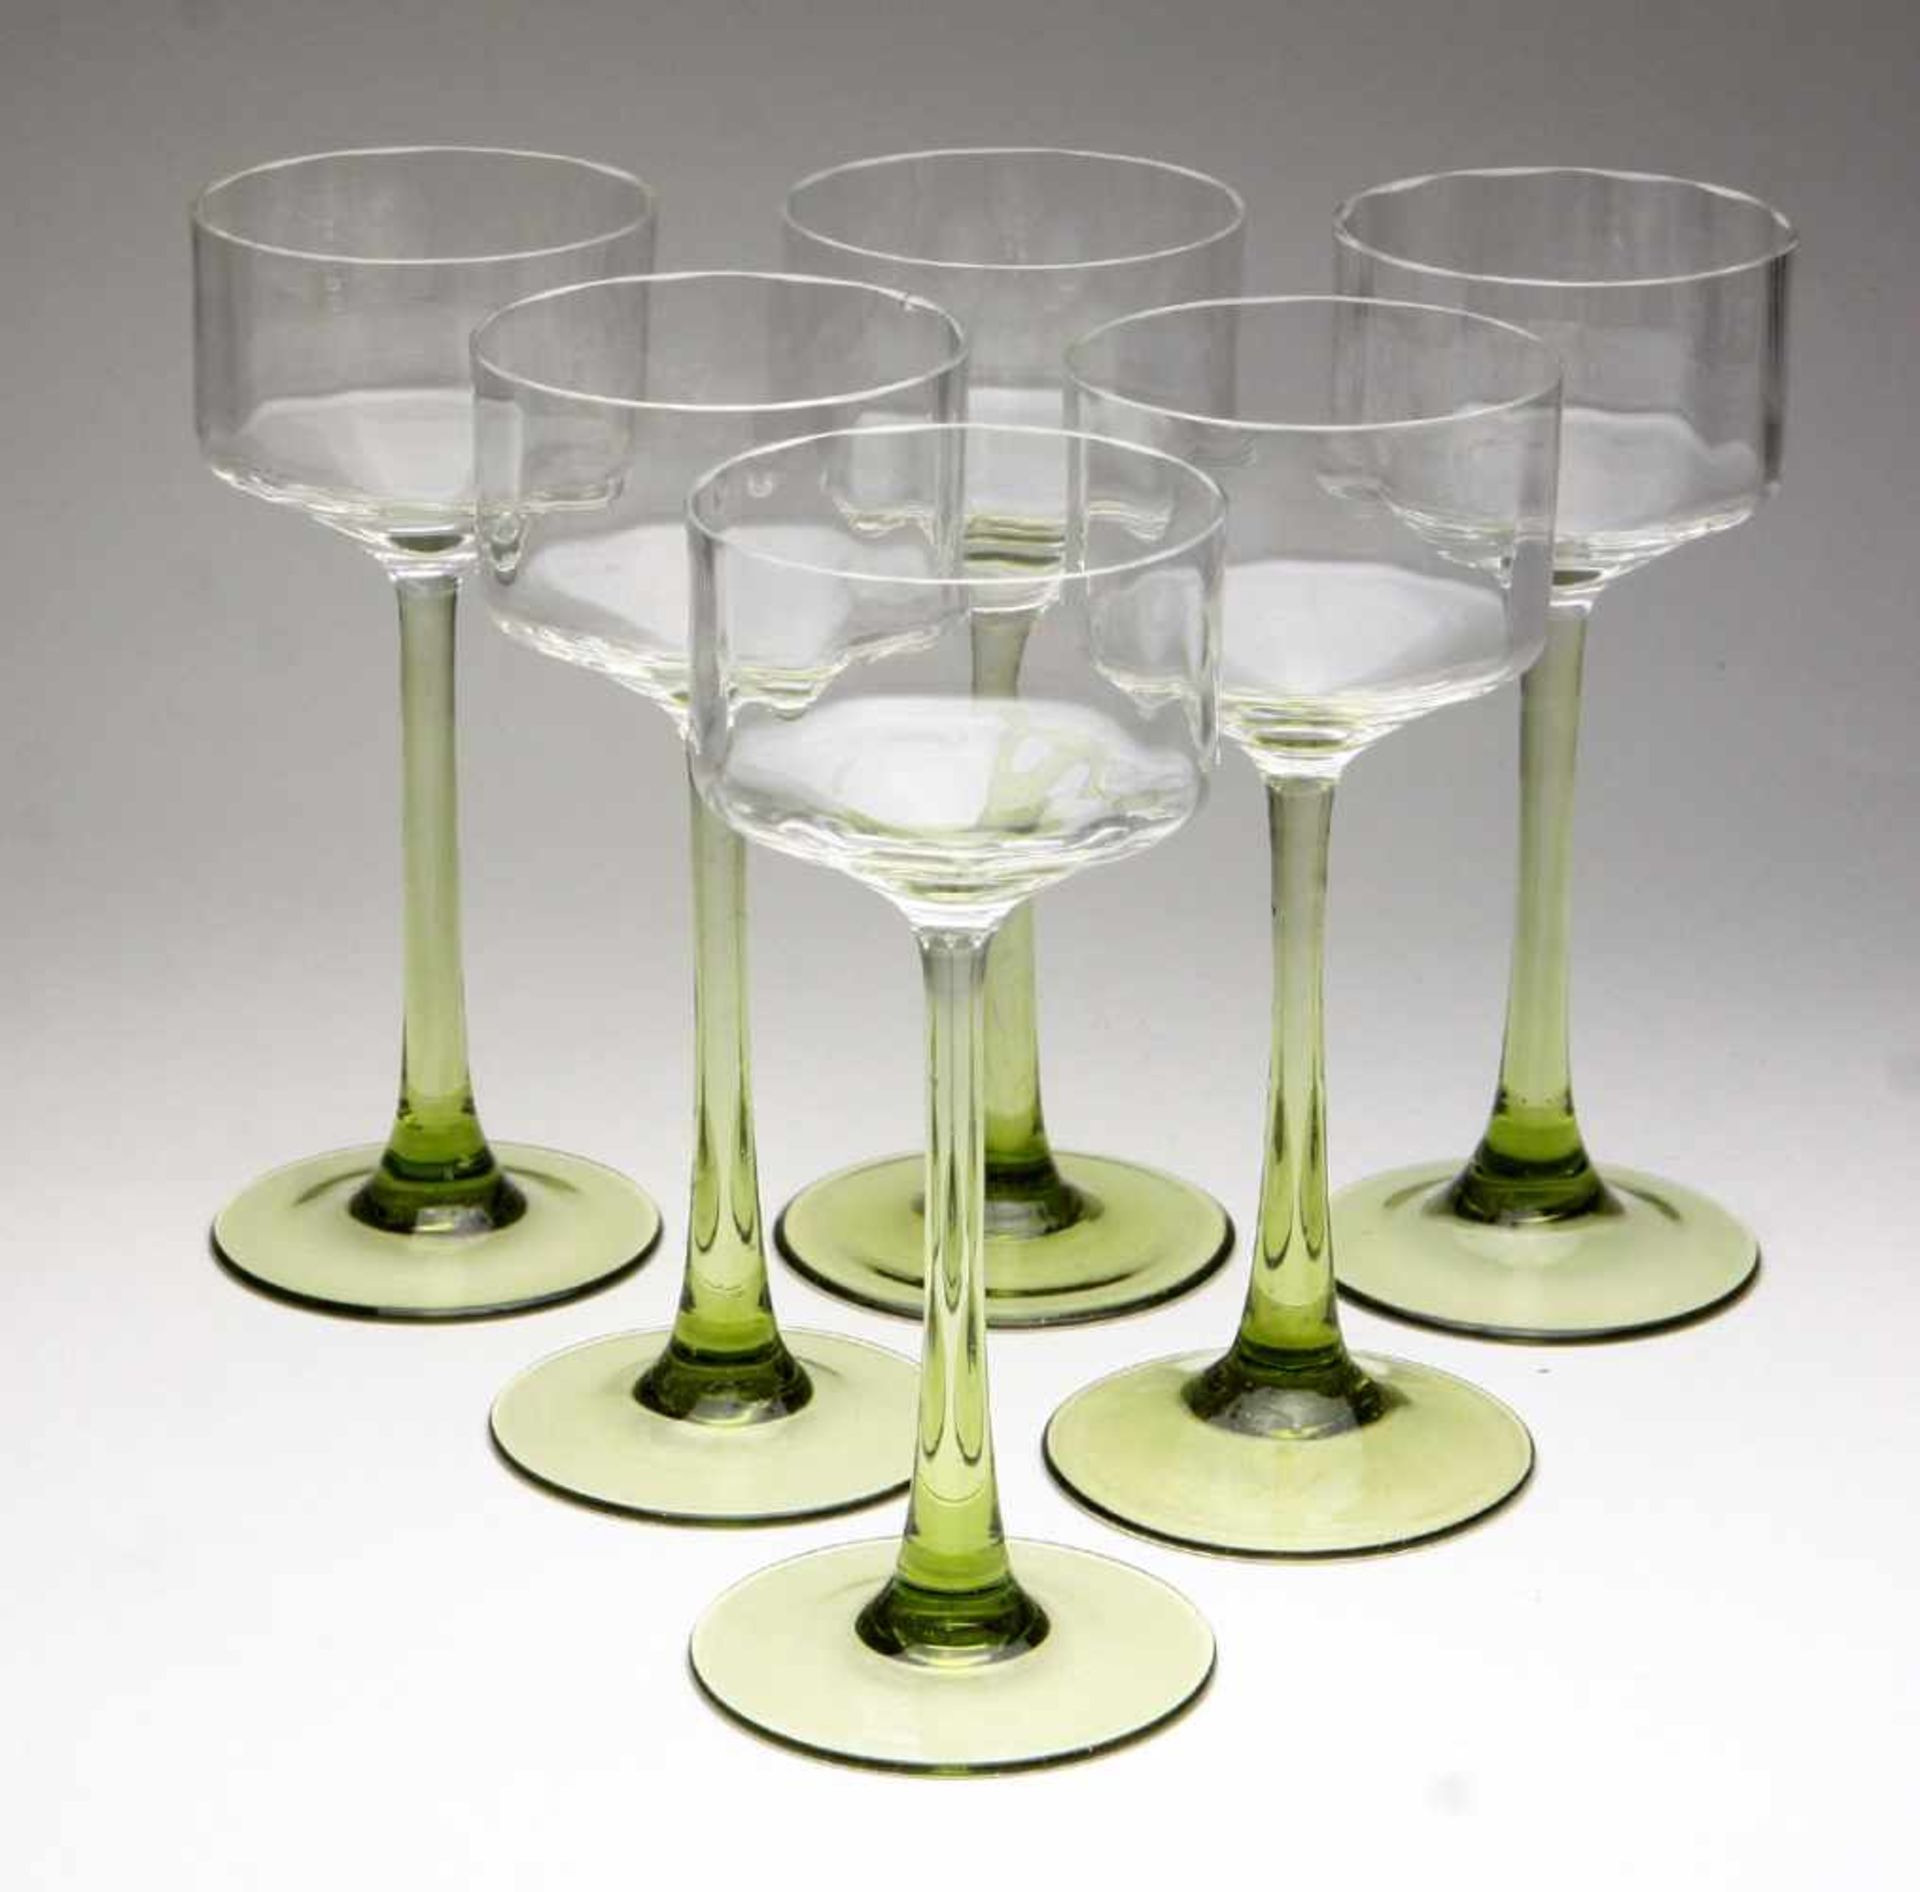 Satz Jugendstil Weinkelche um 1910farbloses u. grünes Glas mundgeblasen, zylindrische optisch